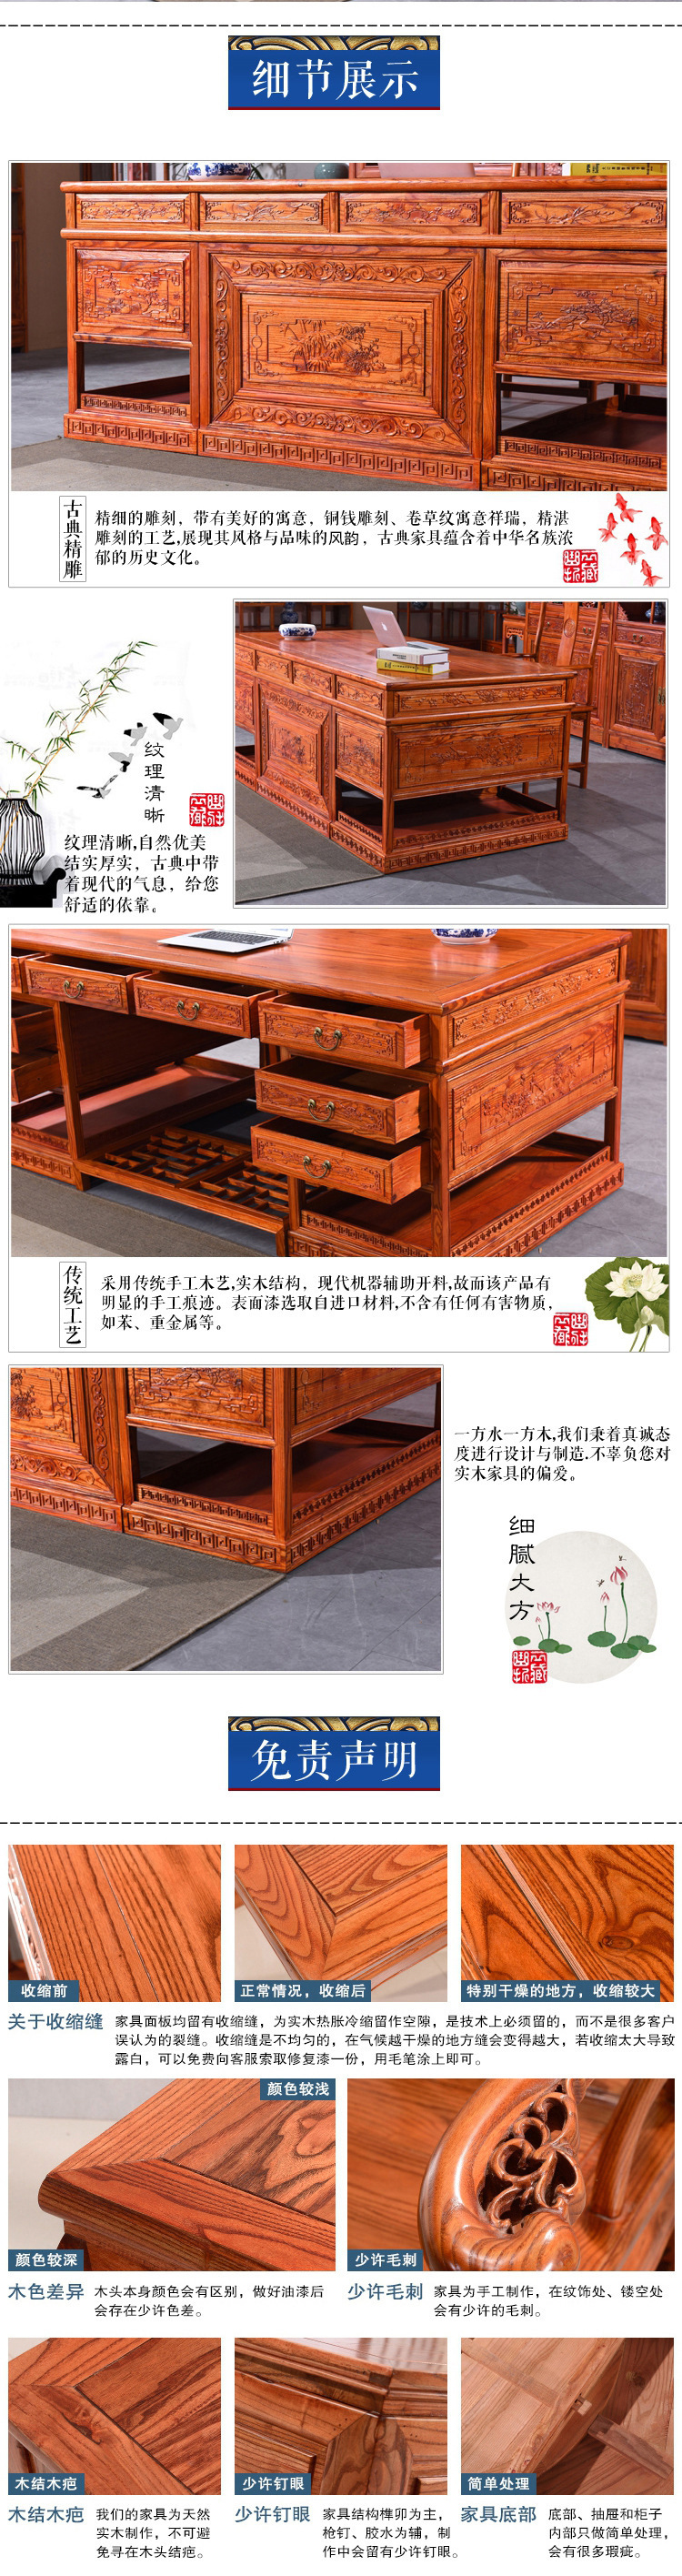 办公桌仿古中式实木南榆木大班桌 写字台电脑桌明清家具批示例图29